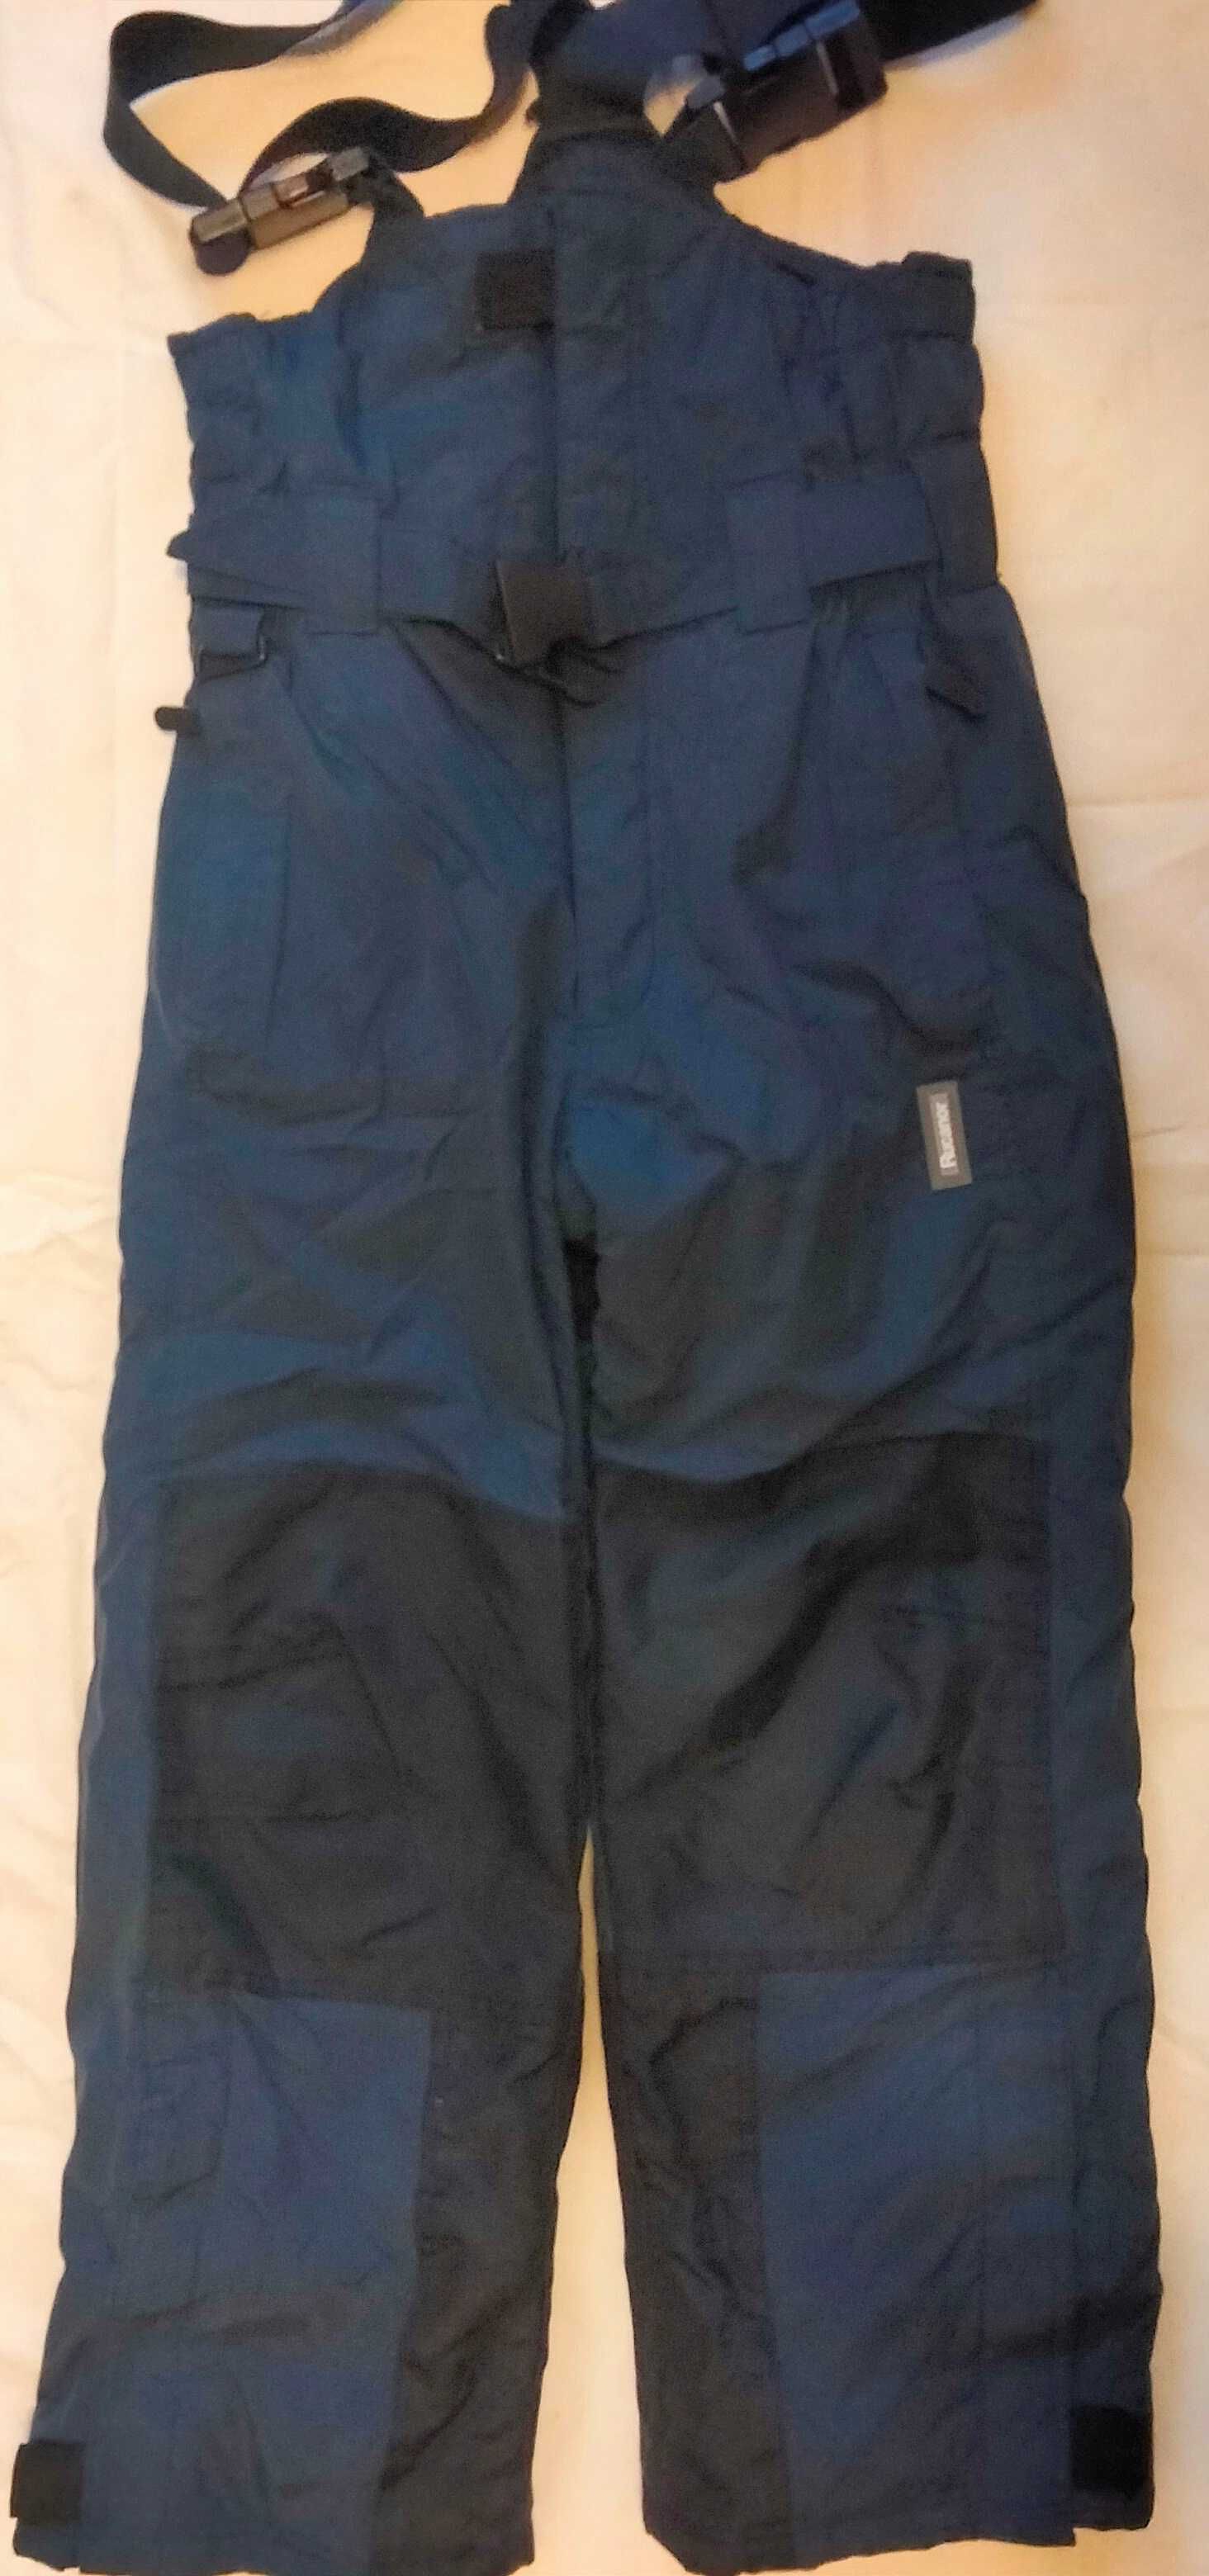 Зимние детские термо штаны, полукомбинезон на рост 140  Фирма Rucanor